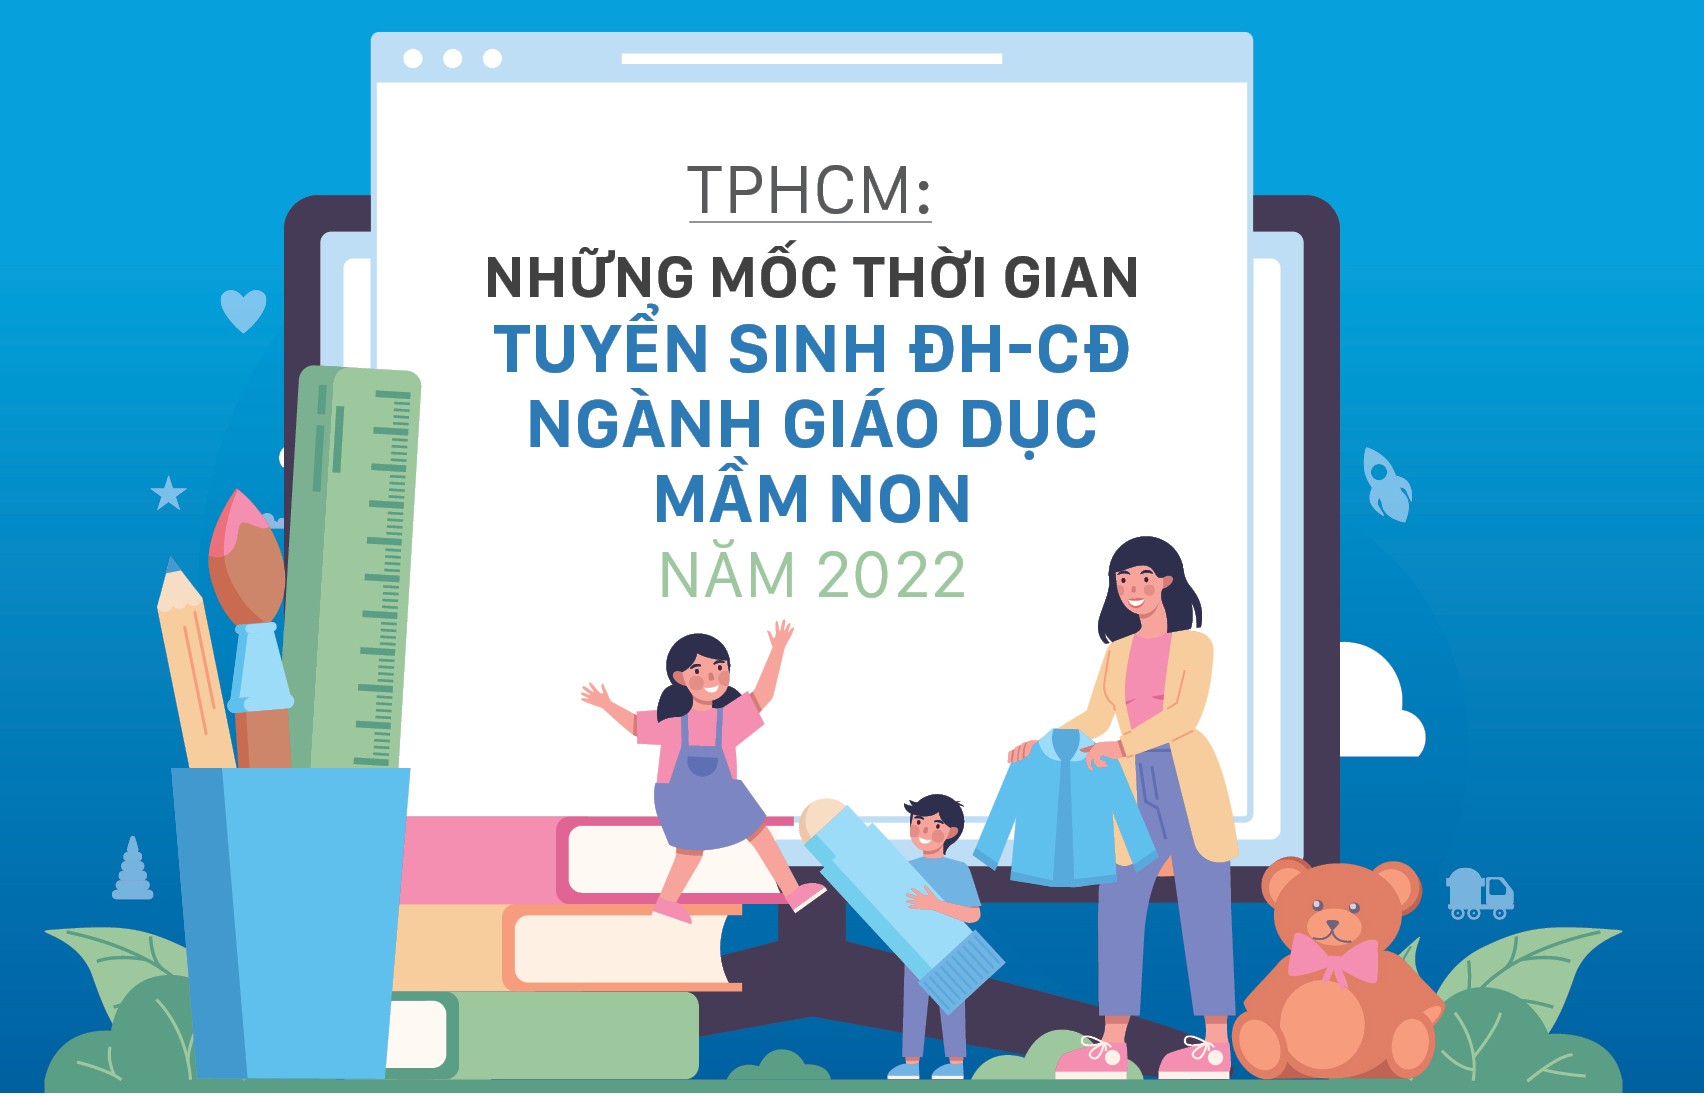 TP. Hồ Chí Minh: Các mốc thời gian tuyển sinh đại học, cao đẳng ngành giáo dục mầm non năm 2022